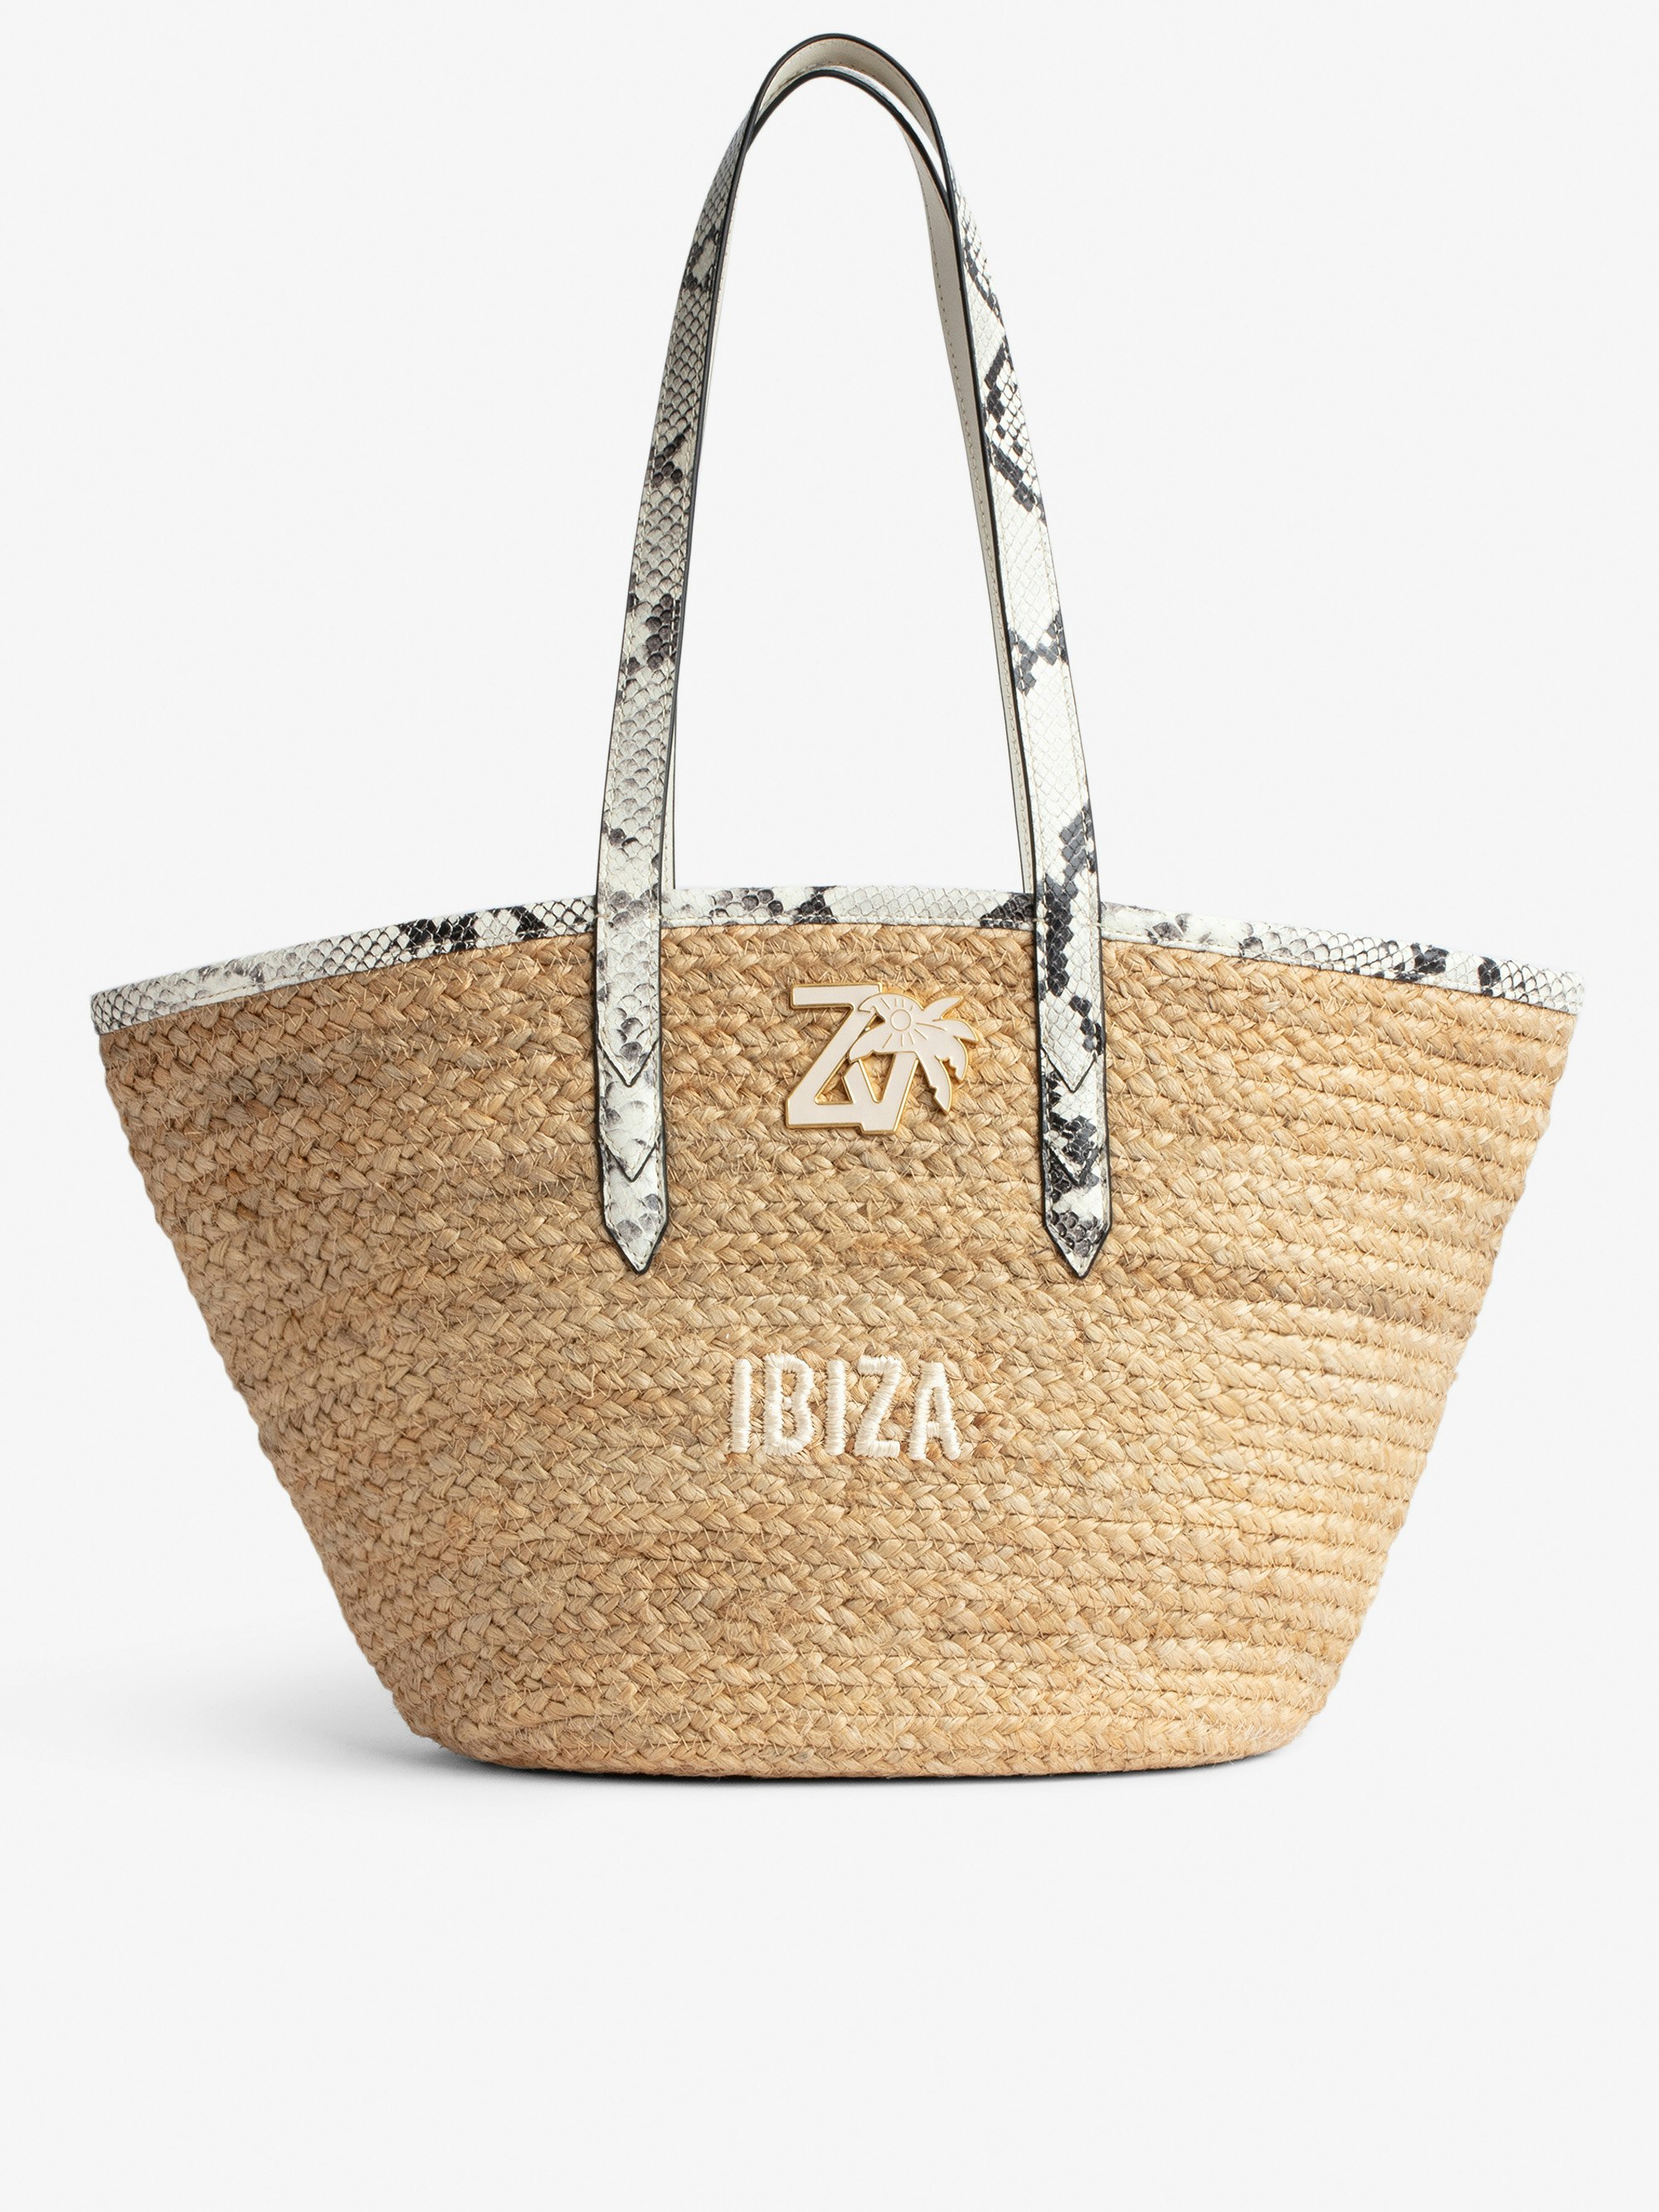 Sac Le Beach Bag - Sac en paille à anses en cuir écru effet python, brodé "Ibiza" et orné d'un charm ZV.